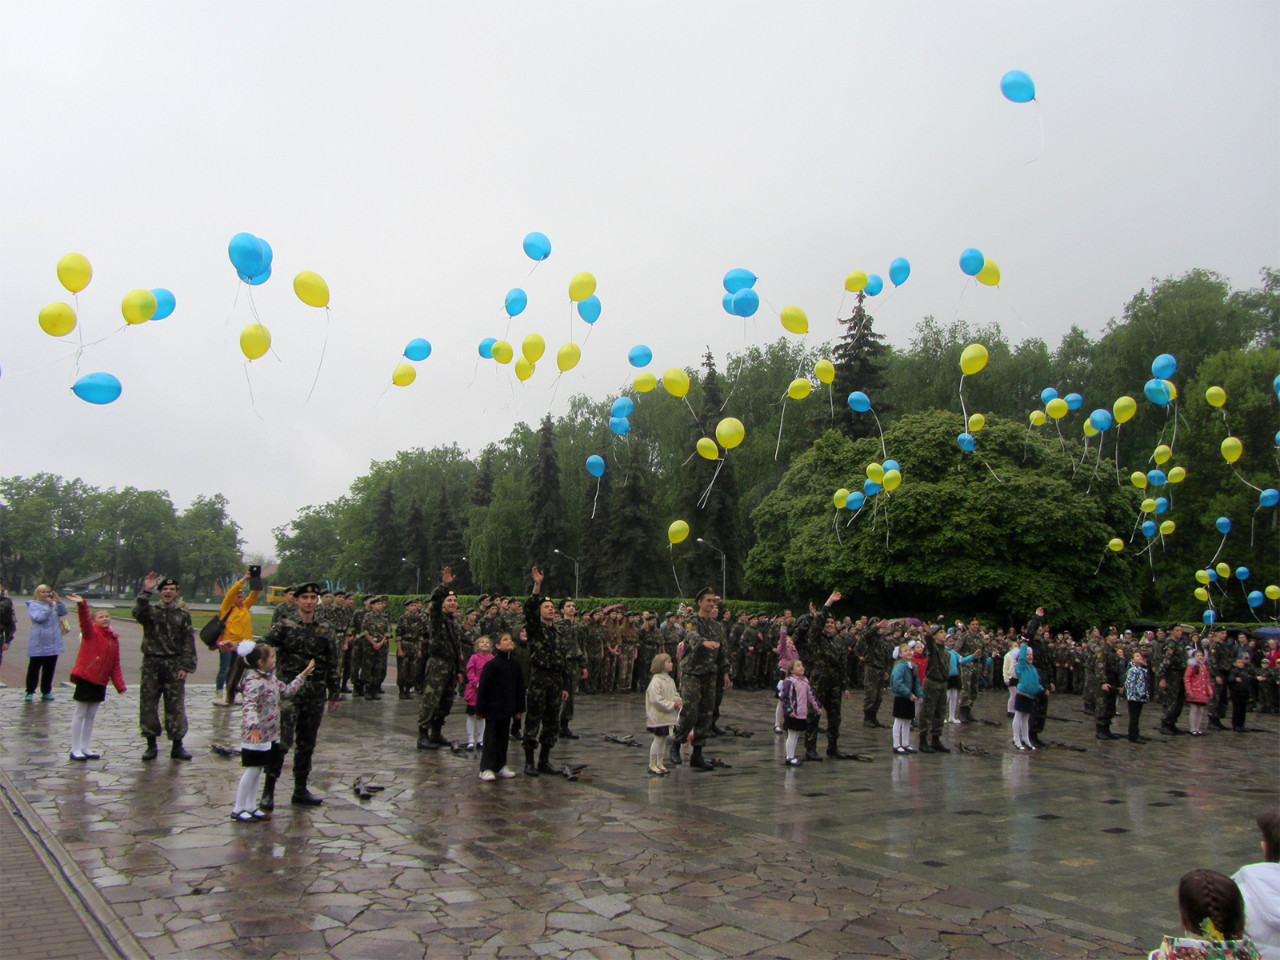  Діти разом з курсантами випускають в повітря кульки символічних жовто-синіх кольорів